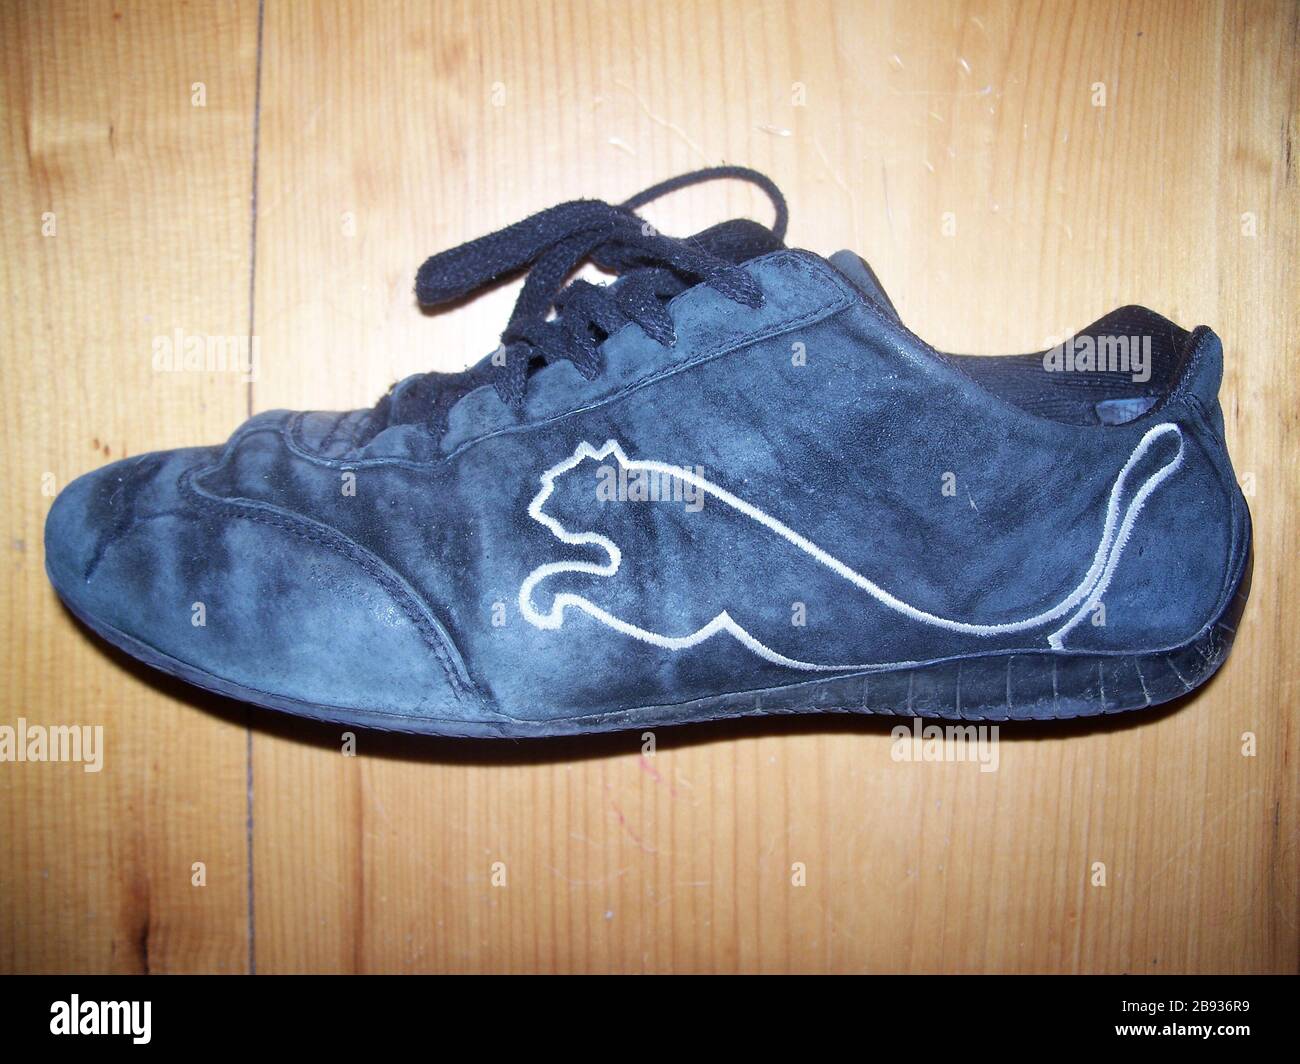 Puma shoes immagini e fotografie stock ad alta risoluzione - Alamy